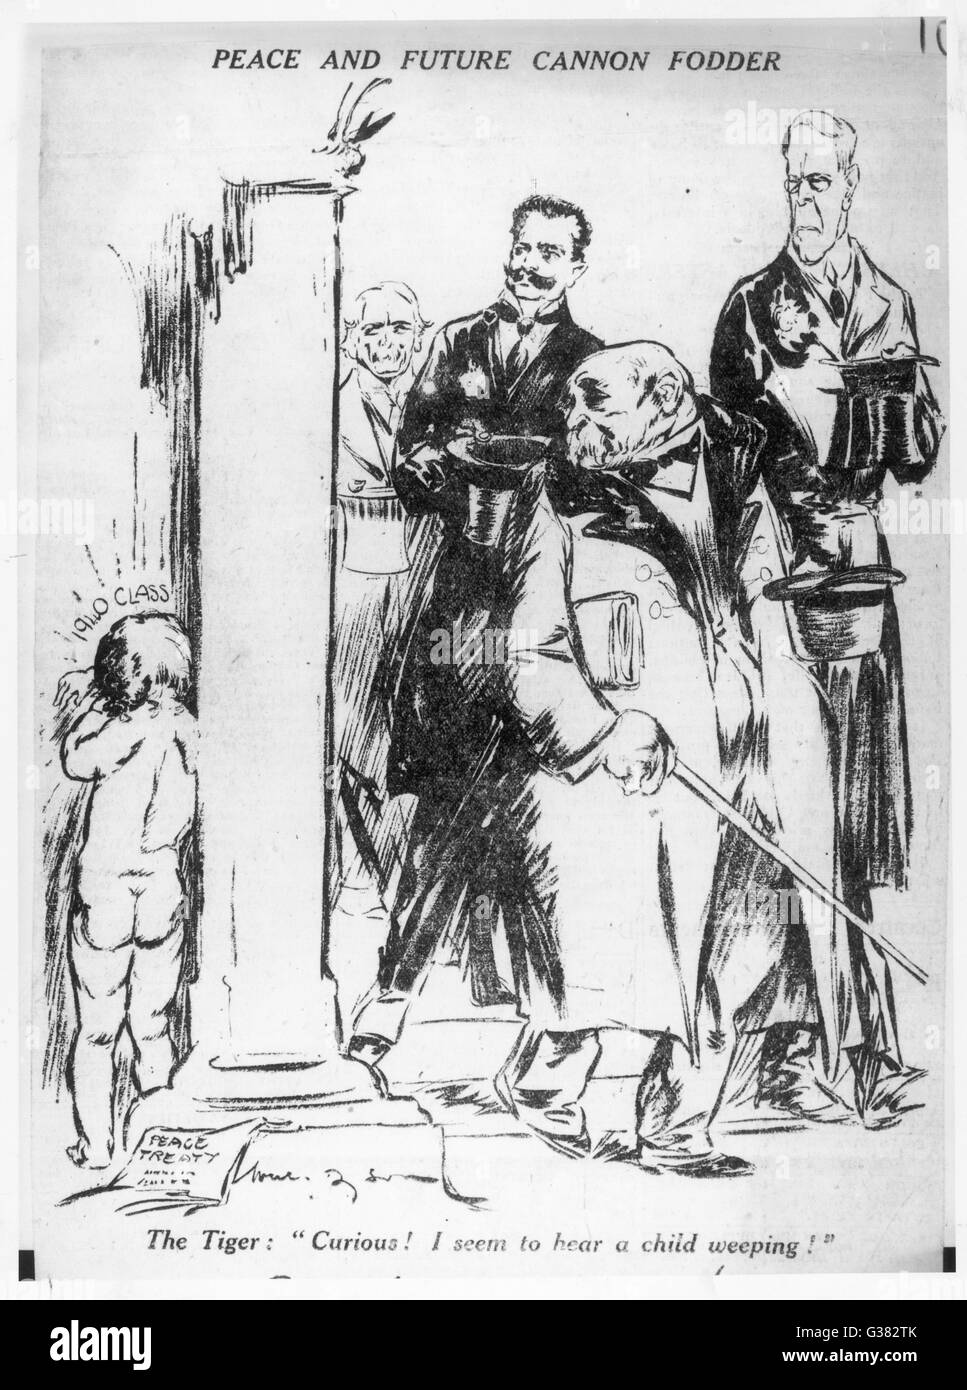 "Frieden und künftige Kanonenfutter" - eine Karikatur von 1920 von der australischen Künstlerin Will Dyson. "Der Tiger" war ein Spitzname für Georges Clemenceau und in der Beschriftung, Clemenceau sagt: "Curious! Ich scheine ein Kind Weinen zu hören." Eine vernichtende endictmen Stockfoto